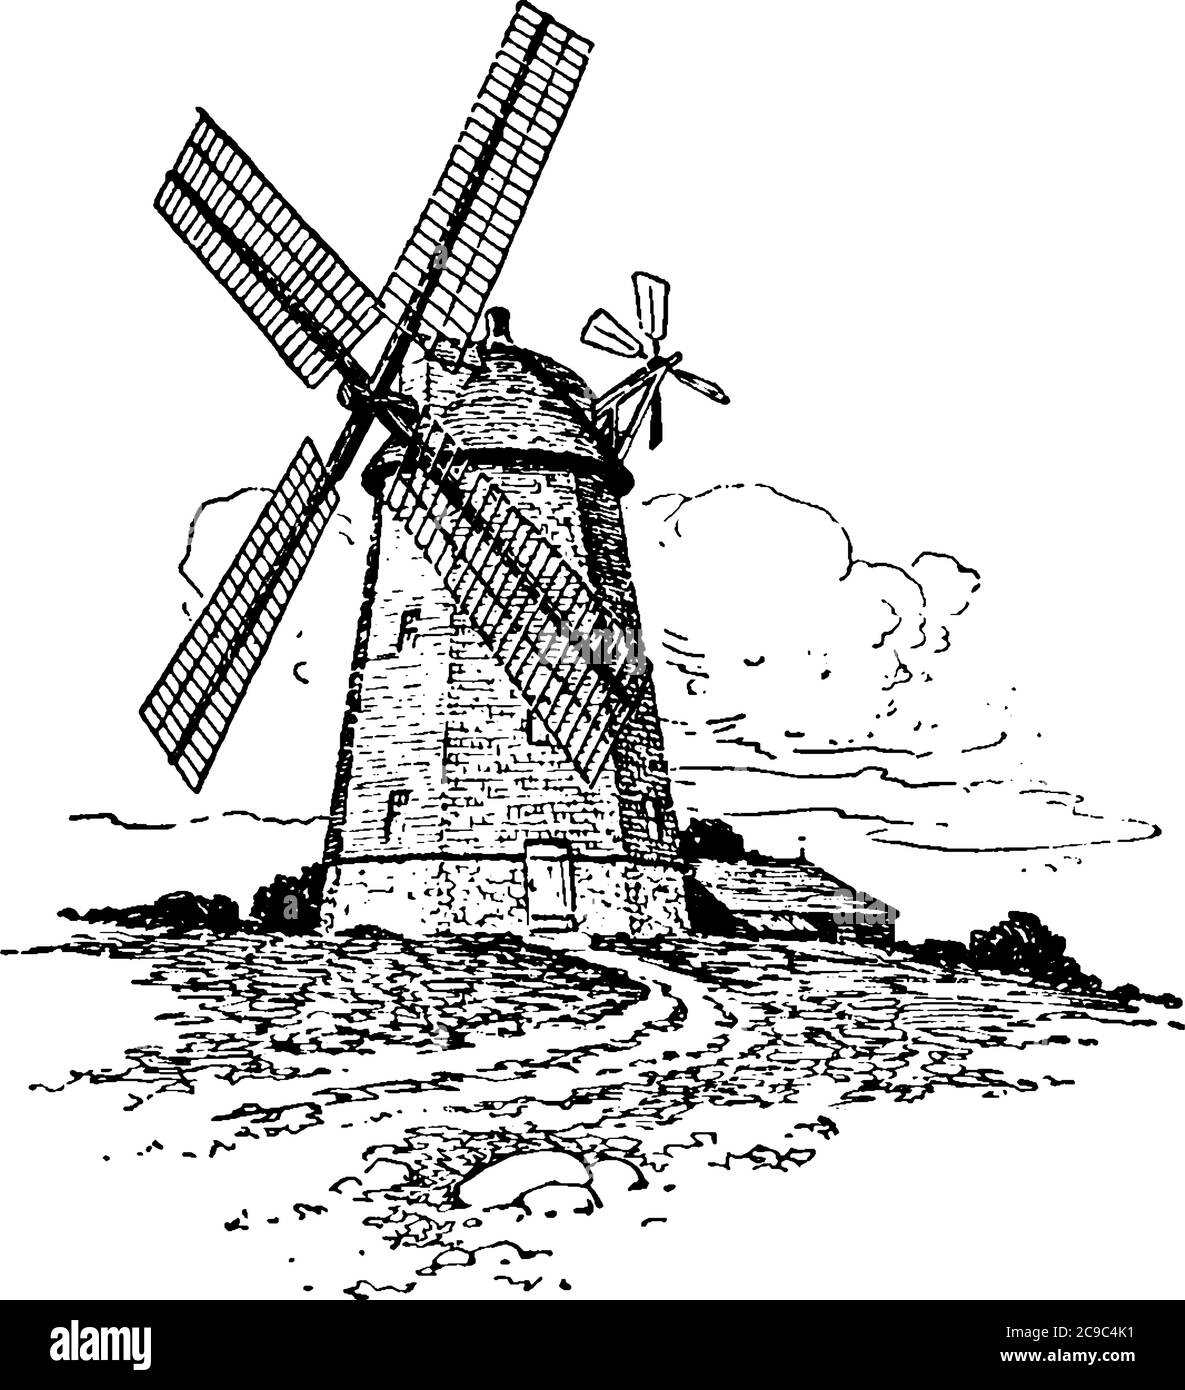 Questo è un vecchio mulino a vento fatto. Windmill è una struttura che converte l'energia eolica in energia rotazionale per mezzo delle grandi lame. Questo r Illustrazione Vettoriale